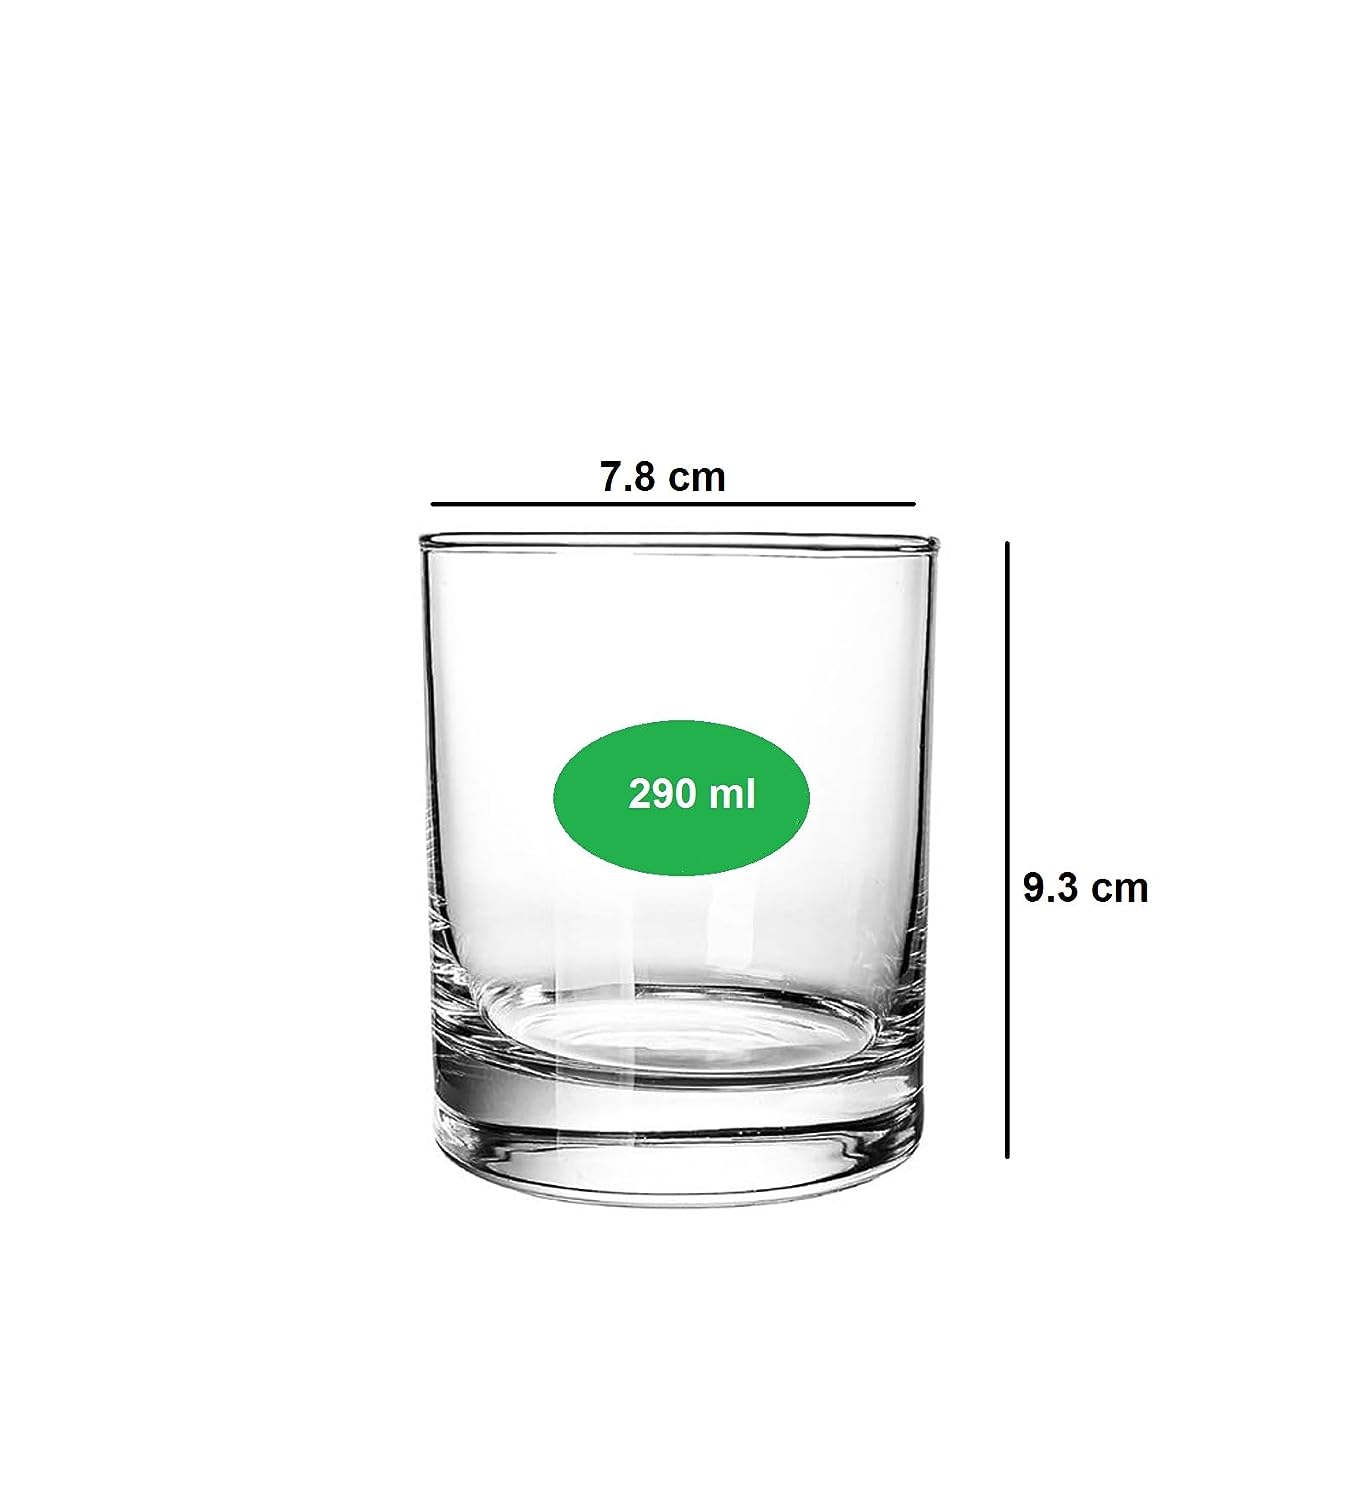 Smartserve Crystal Whiskey Glass Set of 6, 300ml, Gift Box